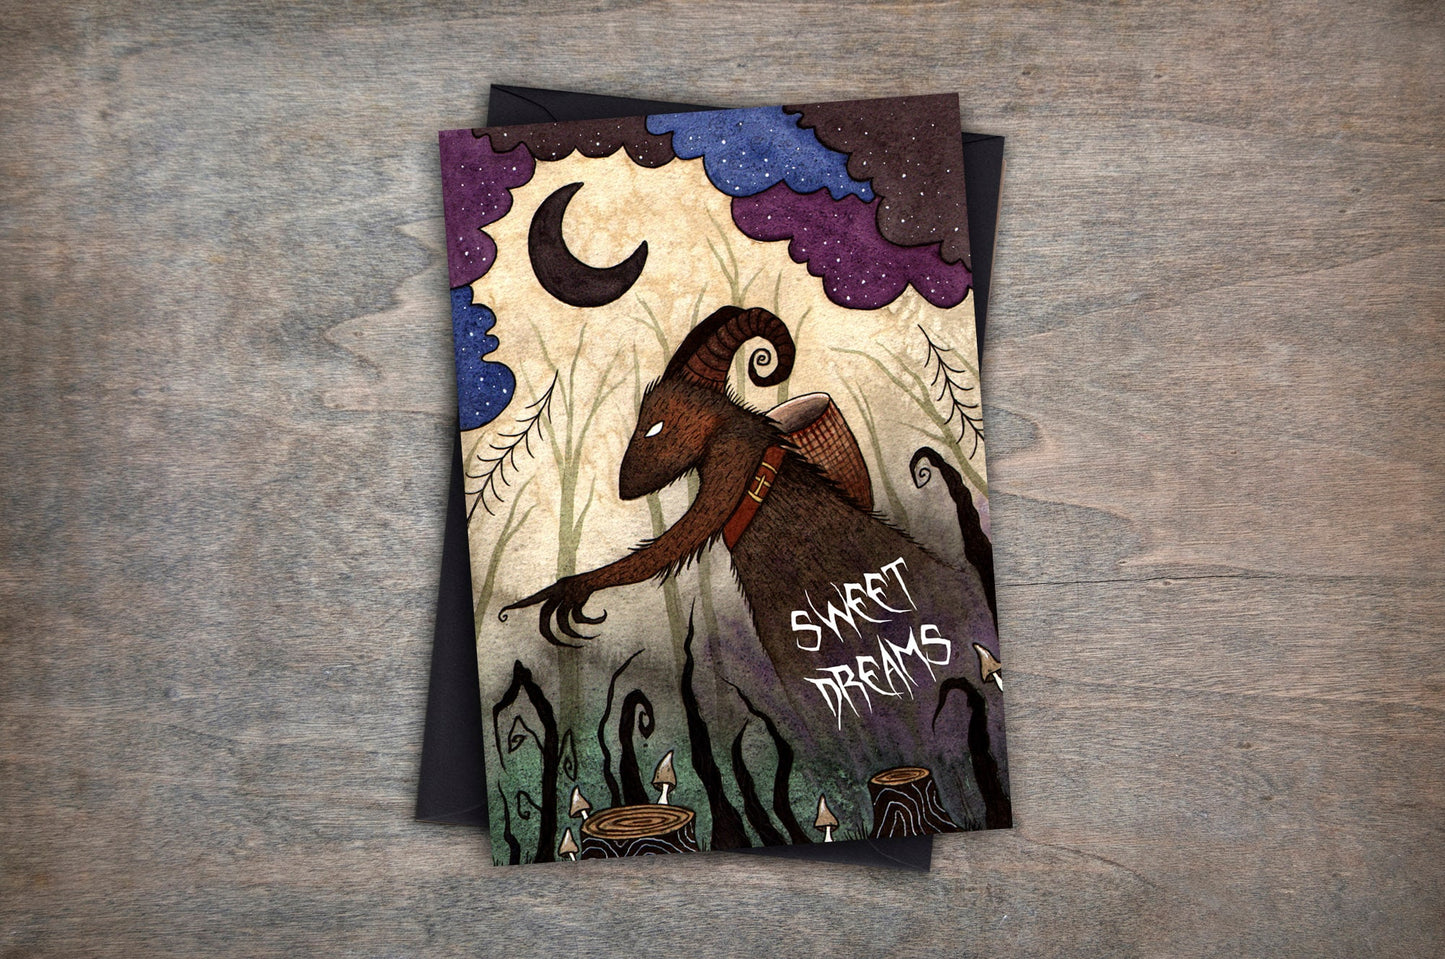 Krampus Sweet Dreams Card - Krampus Creepy Christmas Gothic Winter Card - Black Purple Blue Pagan Yuletide Spooky Greetings Card